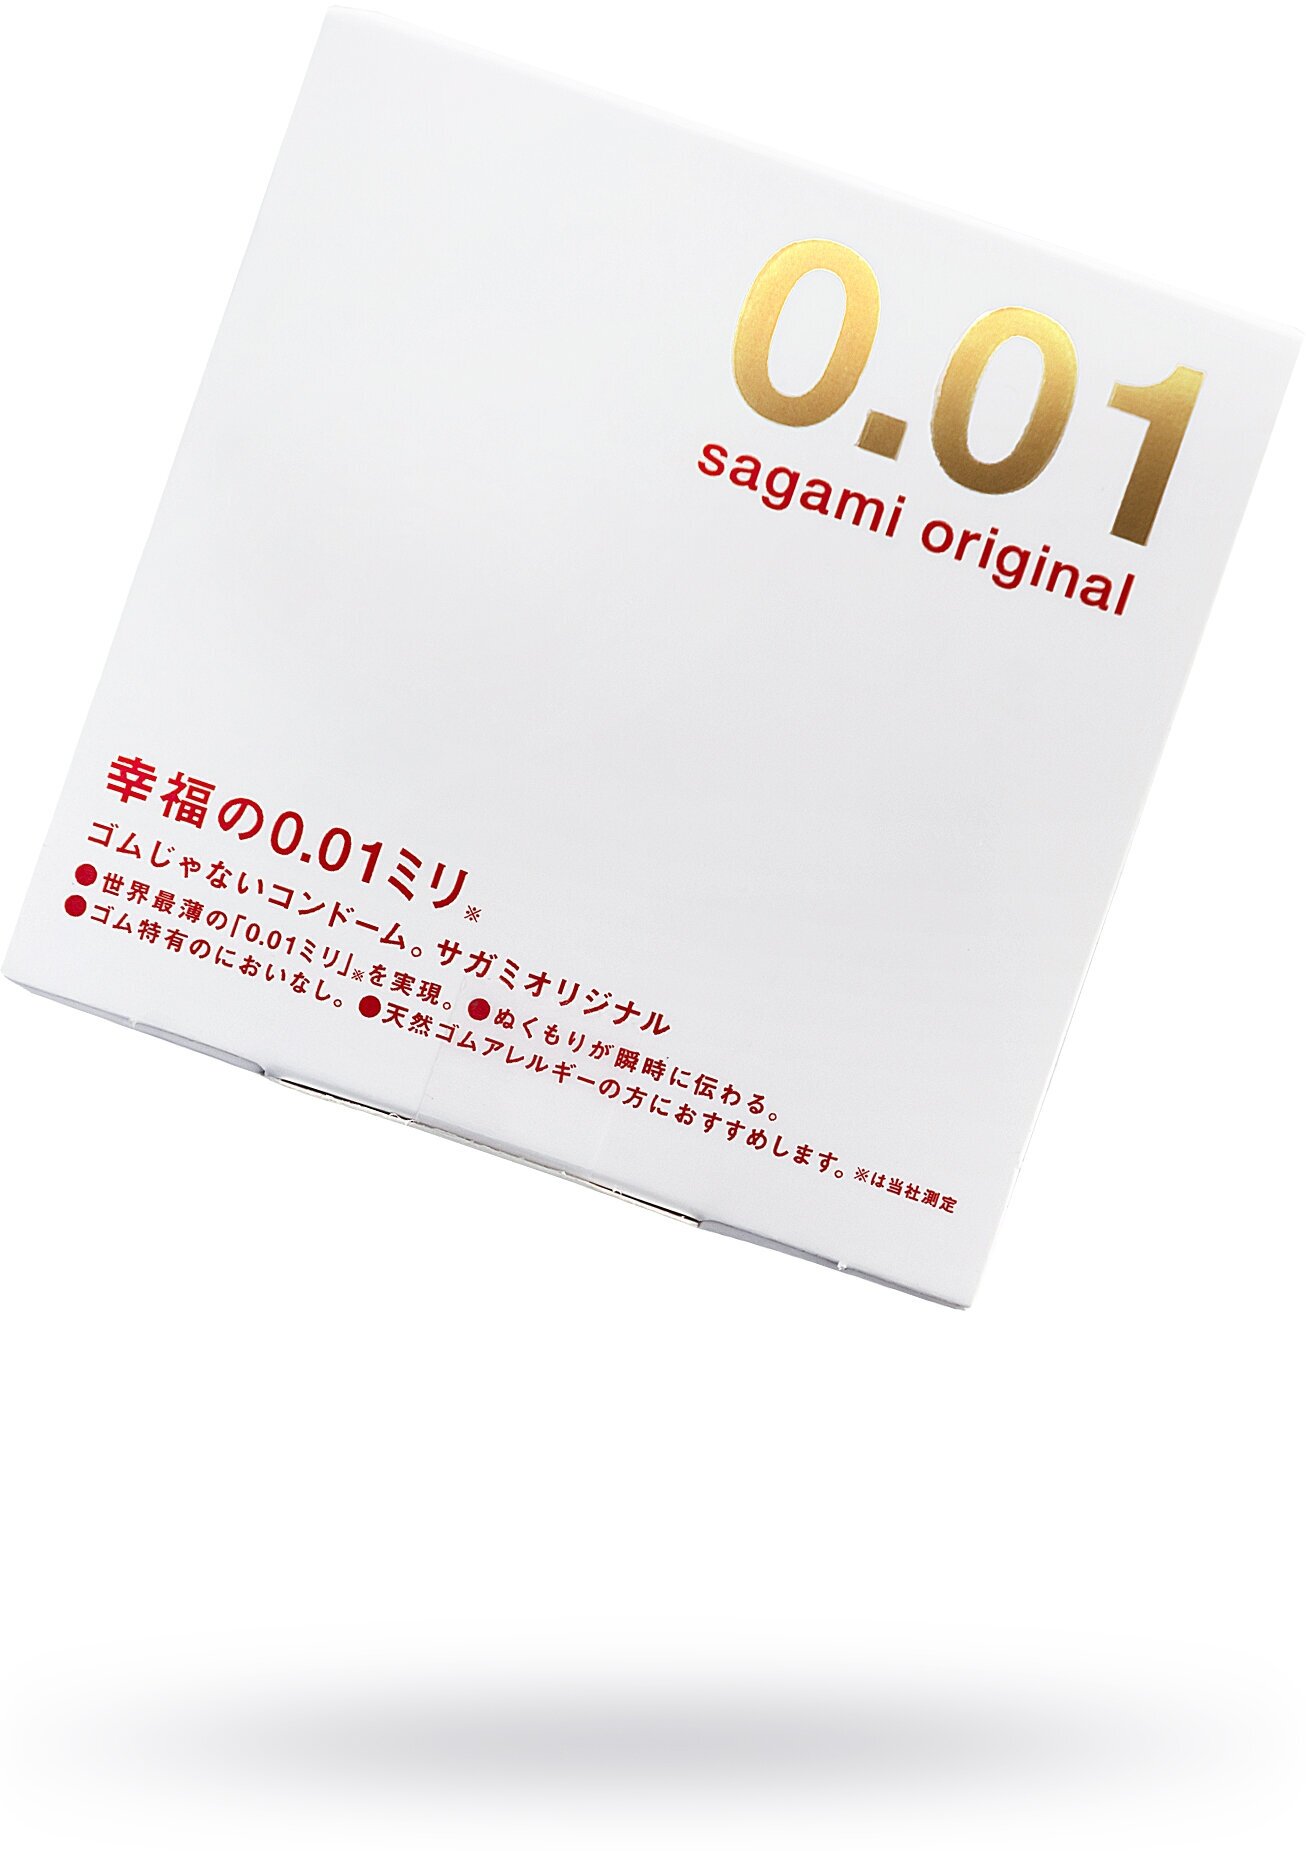 Презервативы Sagami Original 001 полиуретановые ультратонкие 1 шт. - фотография № 12